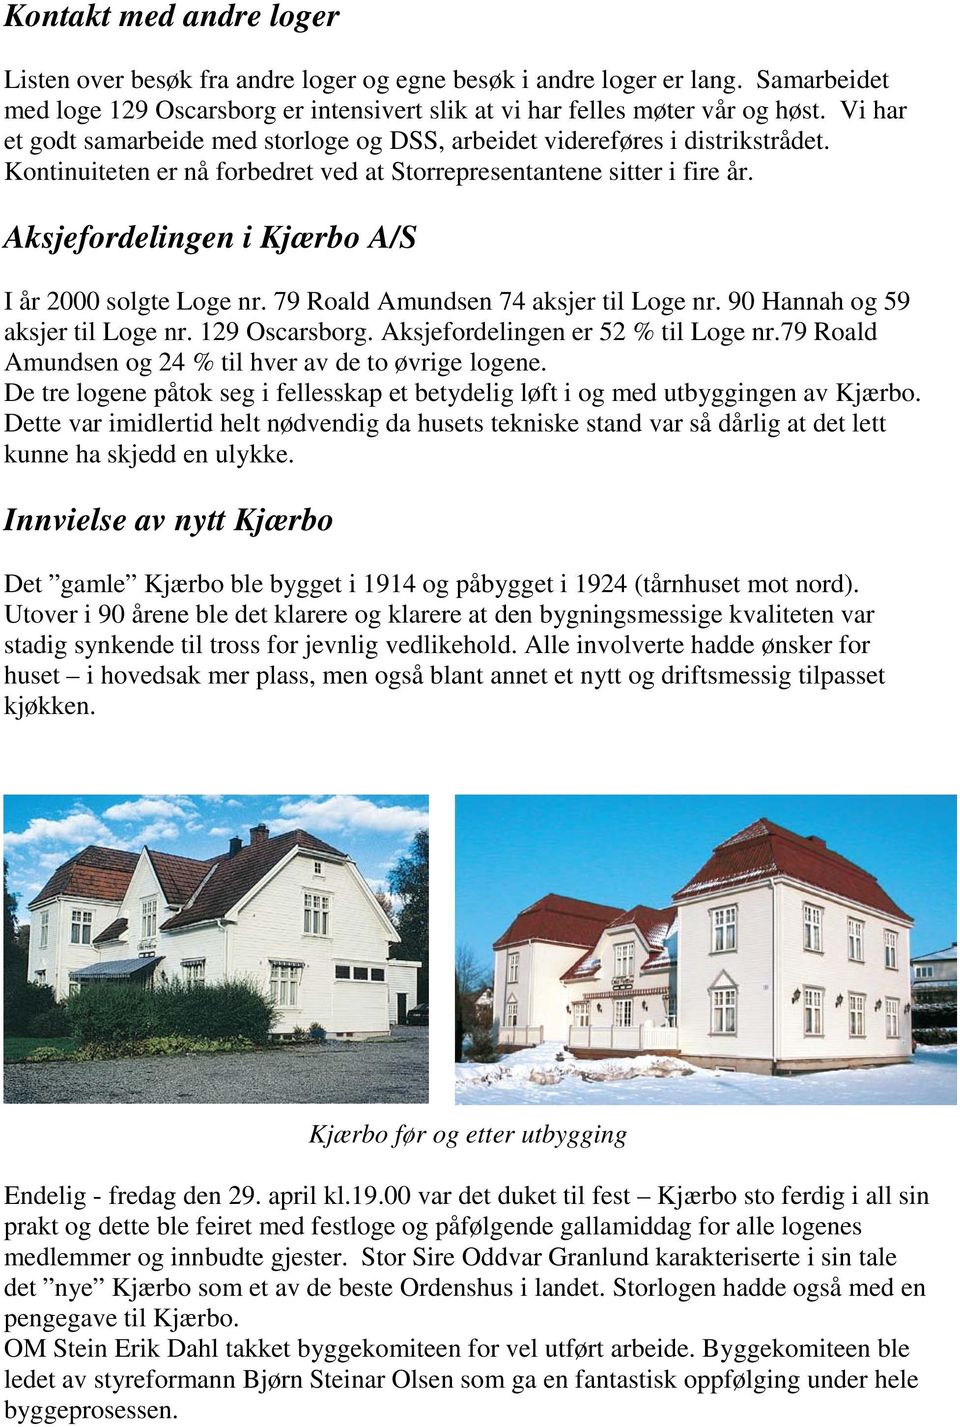 Aksjefordelingen i Kjærbo A/S I år 2000 solgte Loge nr. 79 Roald Amundsen 74 aksjer til Loge nr. 90 Hannah og 59 aksjer til Loge nr. 129 Oscarsborg. Aksjefordelingen er 52 % til Loge nr.